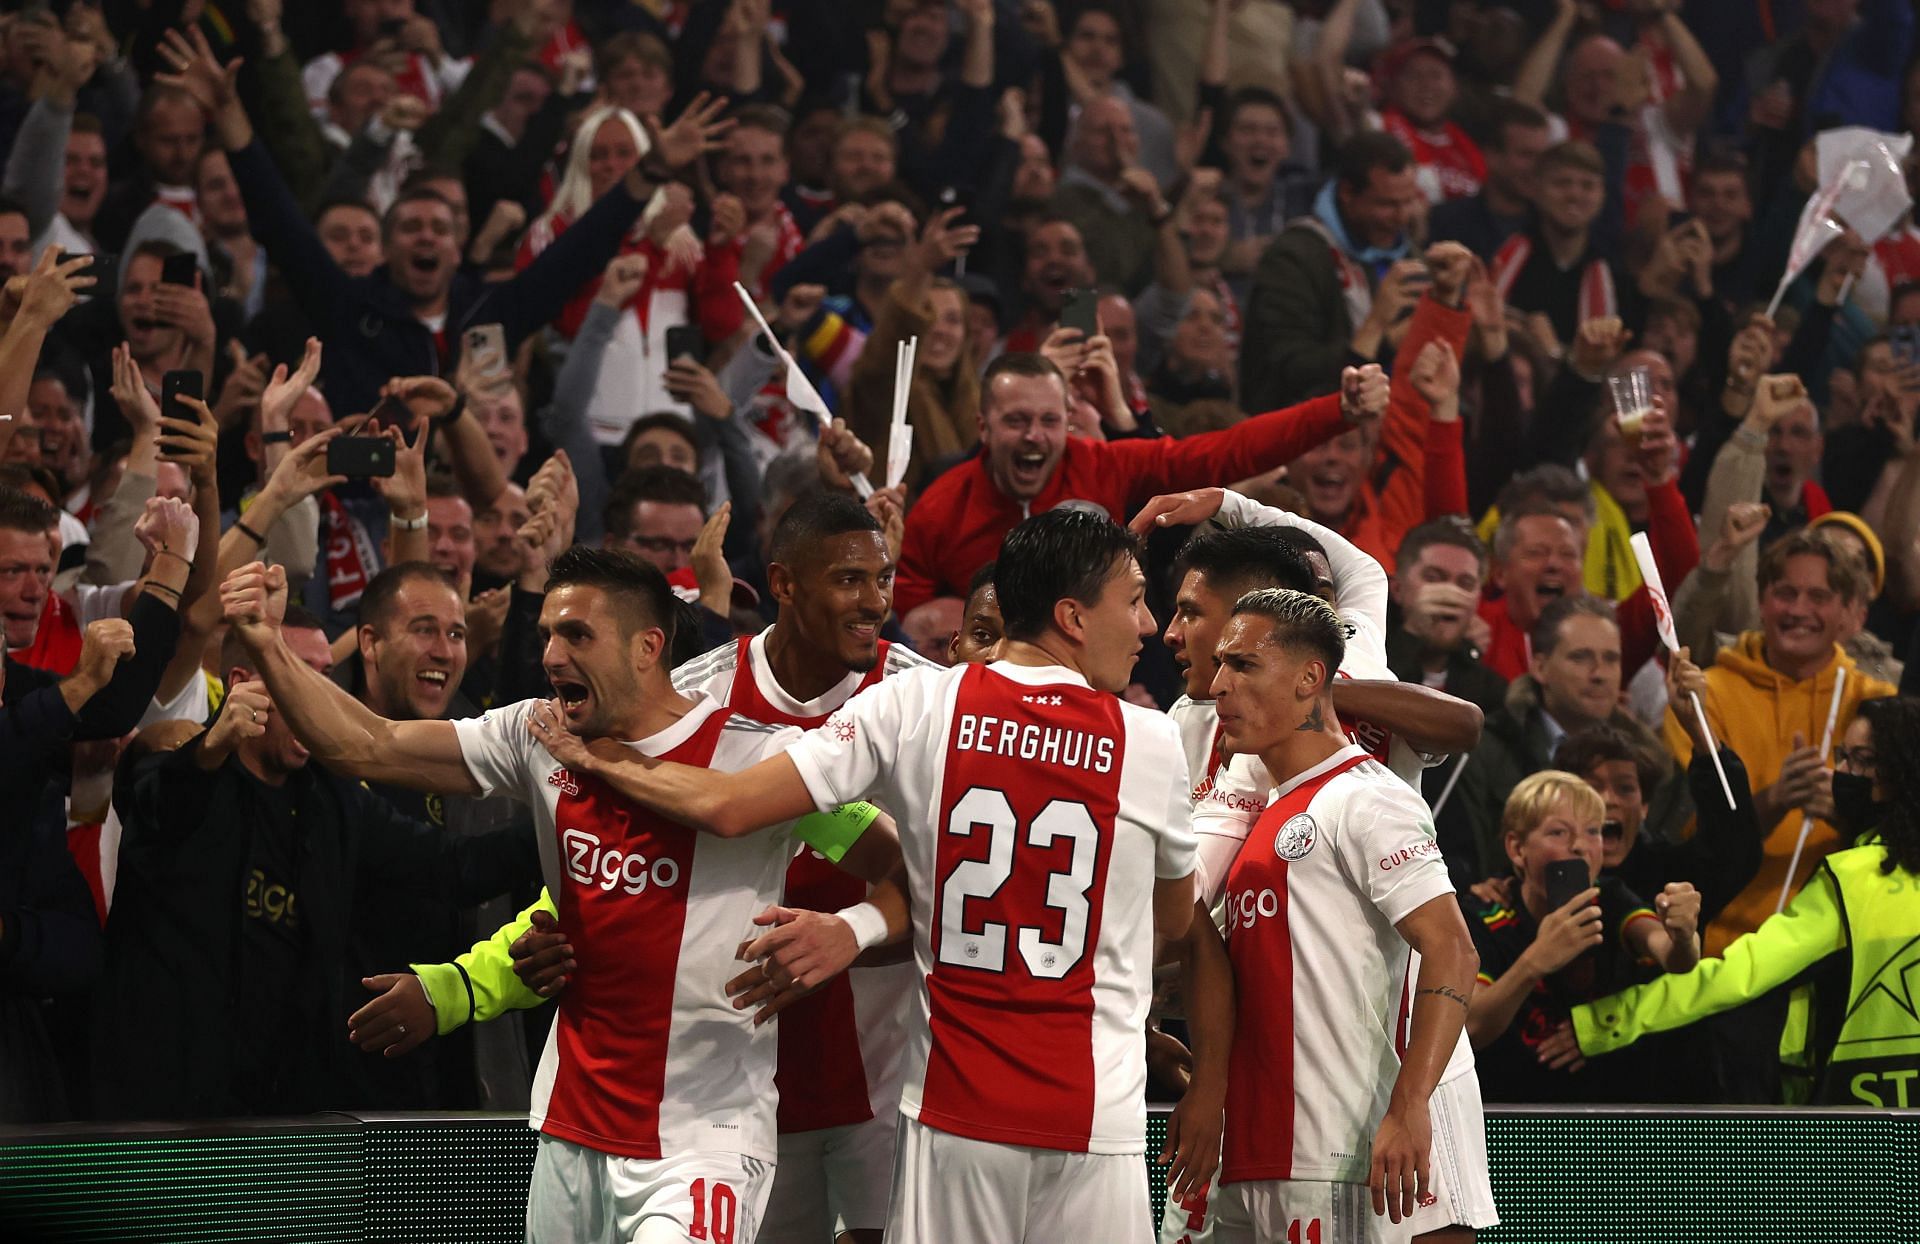 AFC Ajax will face Go Ahead Eagles on Sunday